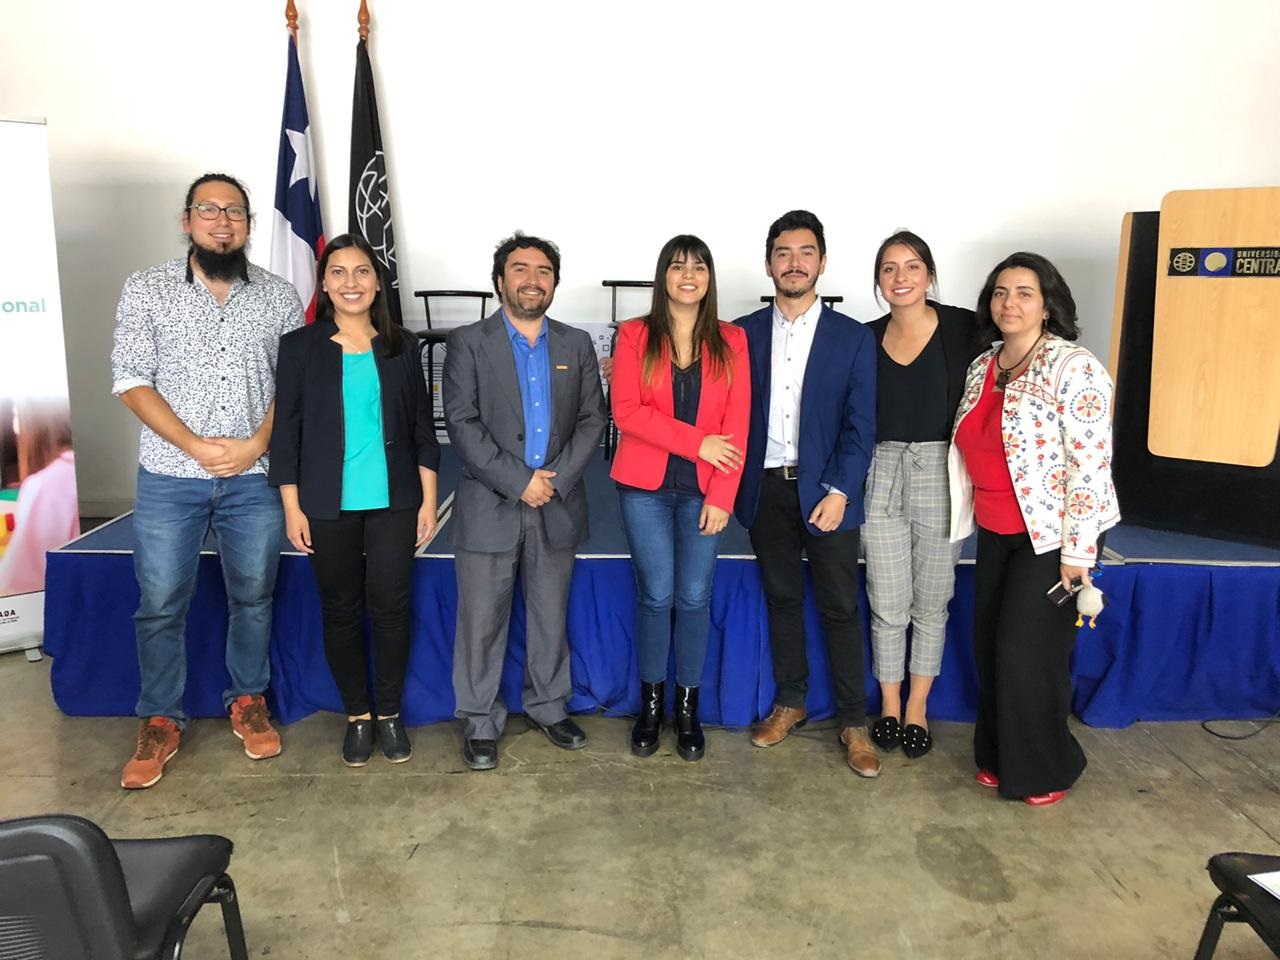 1ª jornada interescuelas de Terapia Ocupacional Región de Coquimbo: “Aprendiendo de las buenas prácticas y cultura inclusiva en la acción profesional”